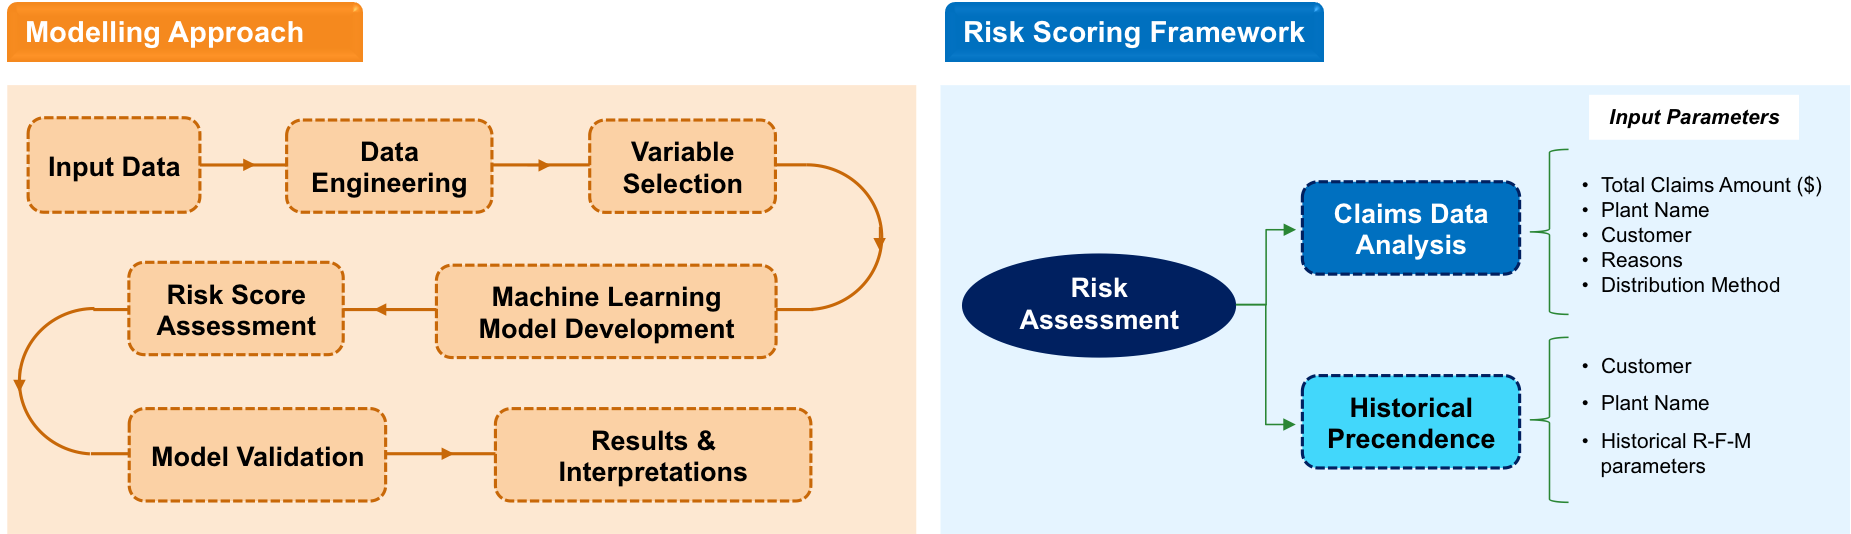 Risk Assessment framework